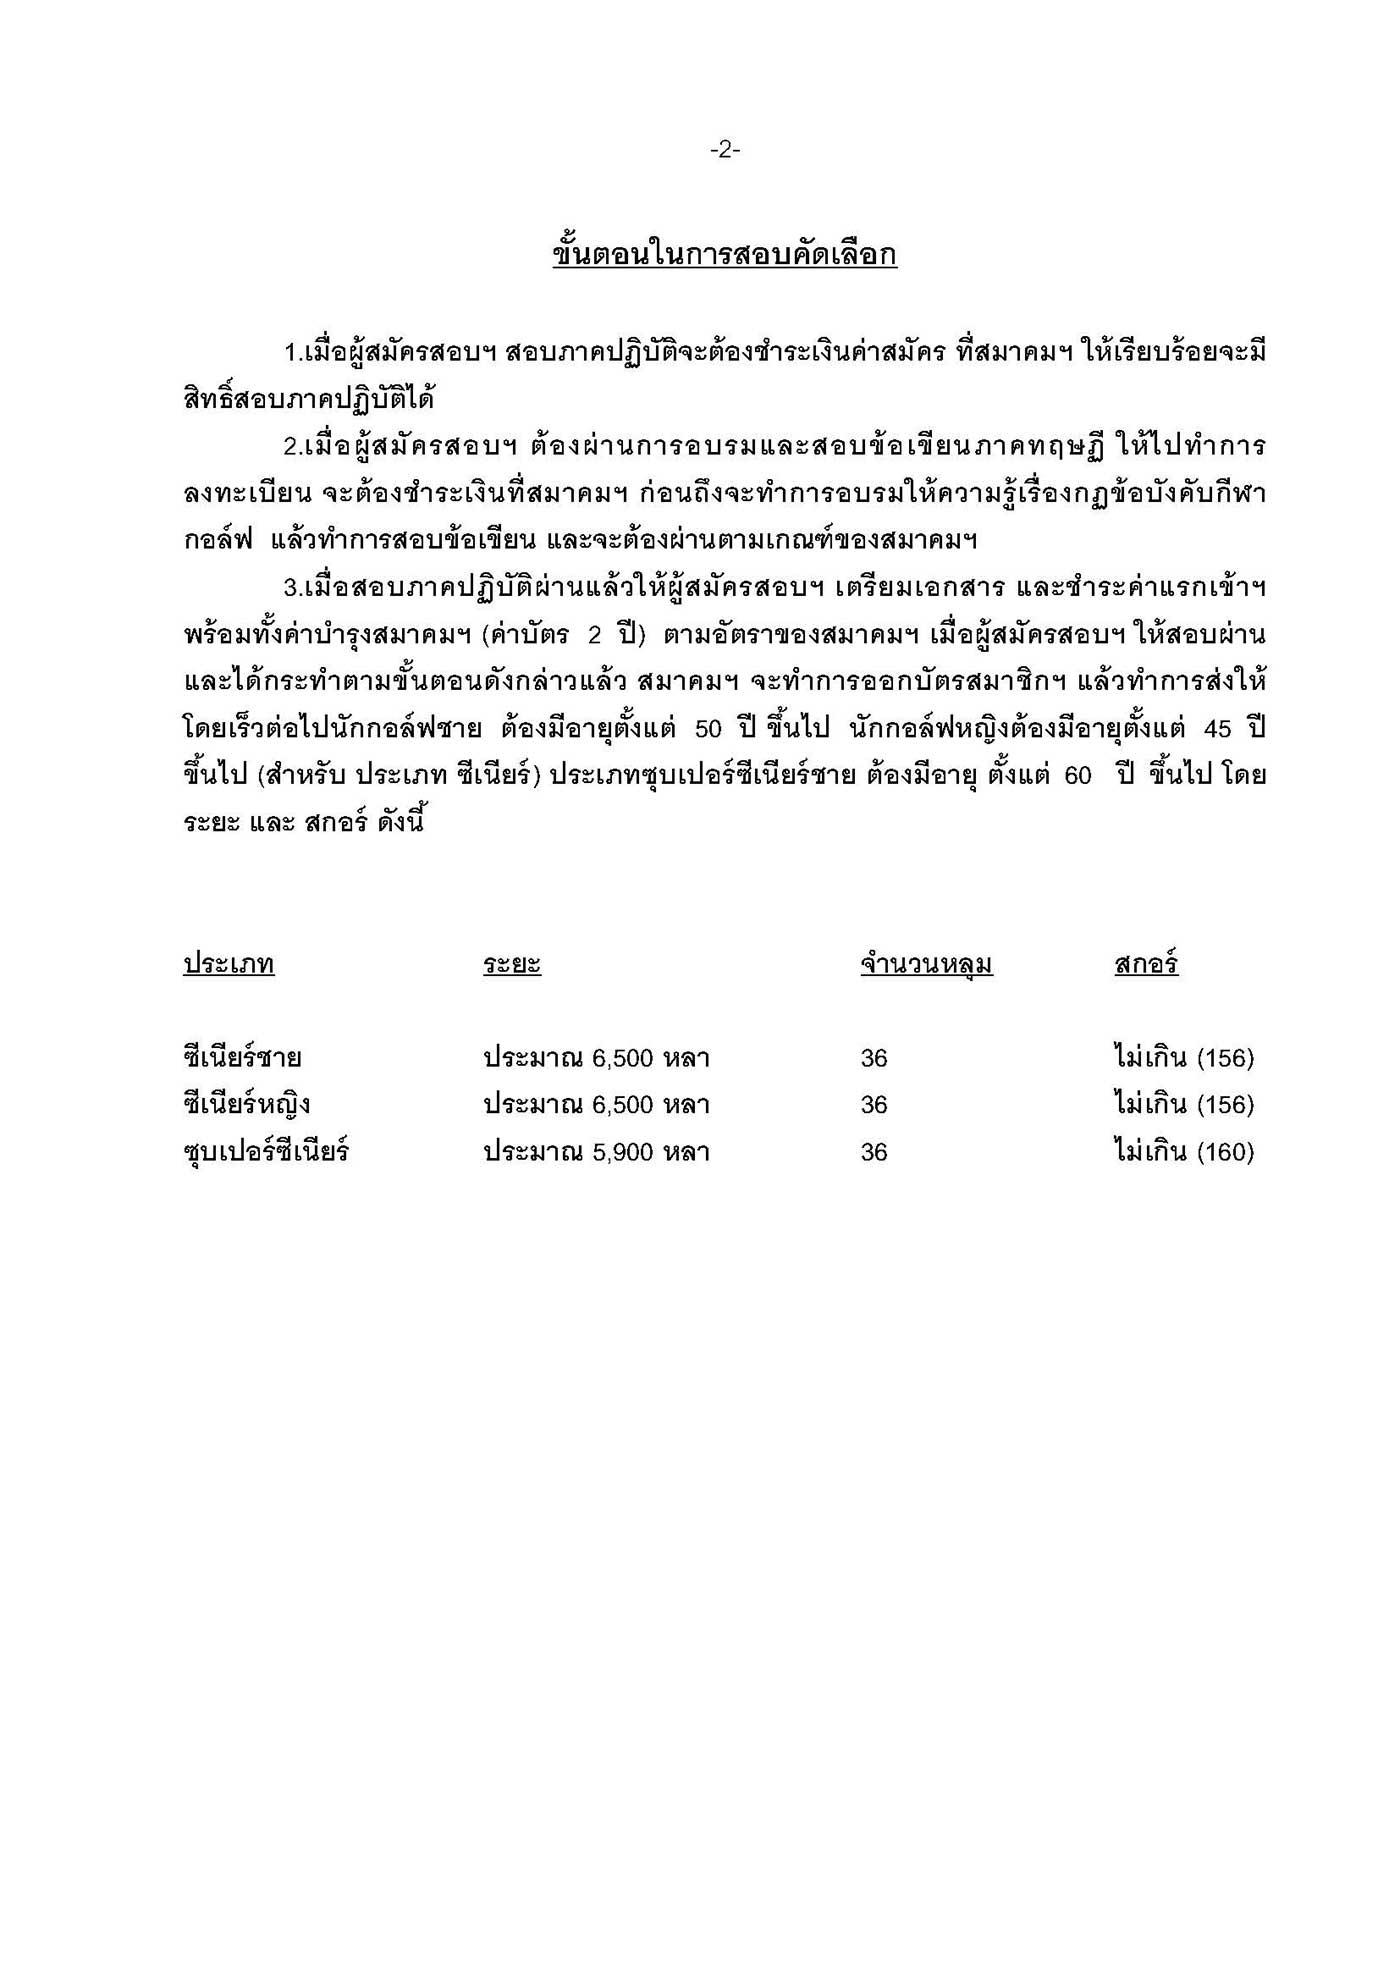 หนงสอสอบเปนภาษาไทย กบนทรบร Page 2